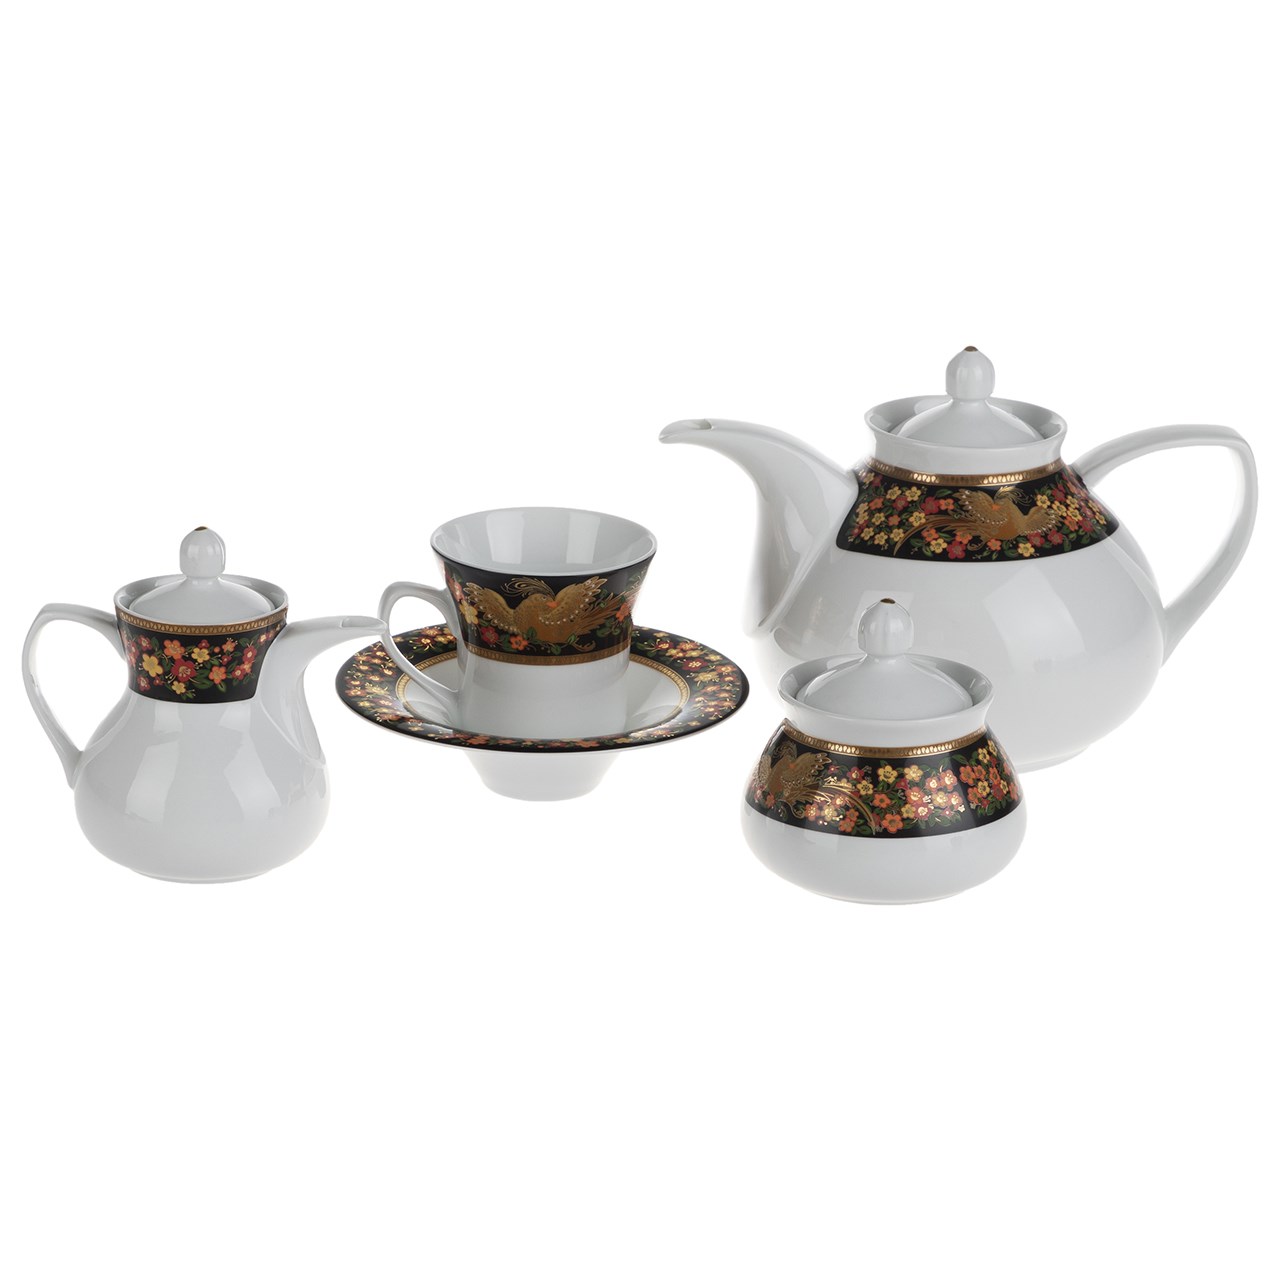 سرویس چای خوری 18 پارچه چینی زرین ایران سری شهرزاد مدل Simorgh درجه یک